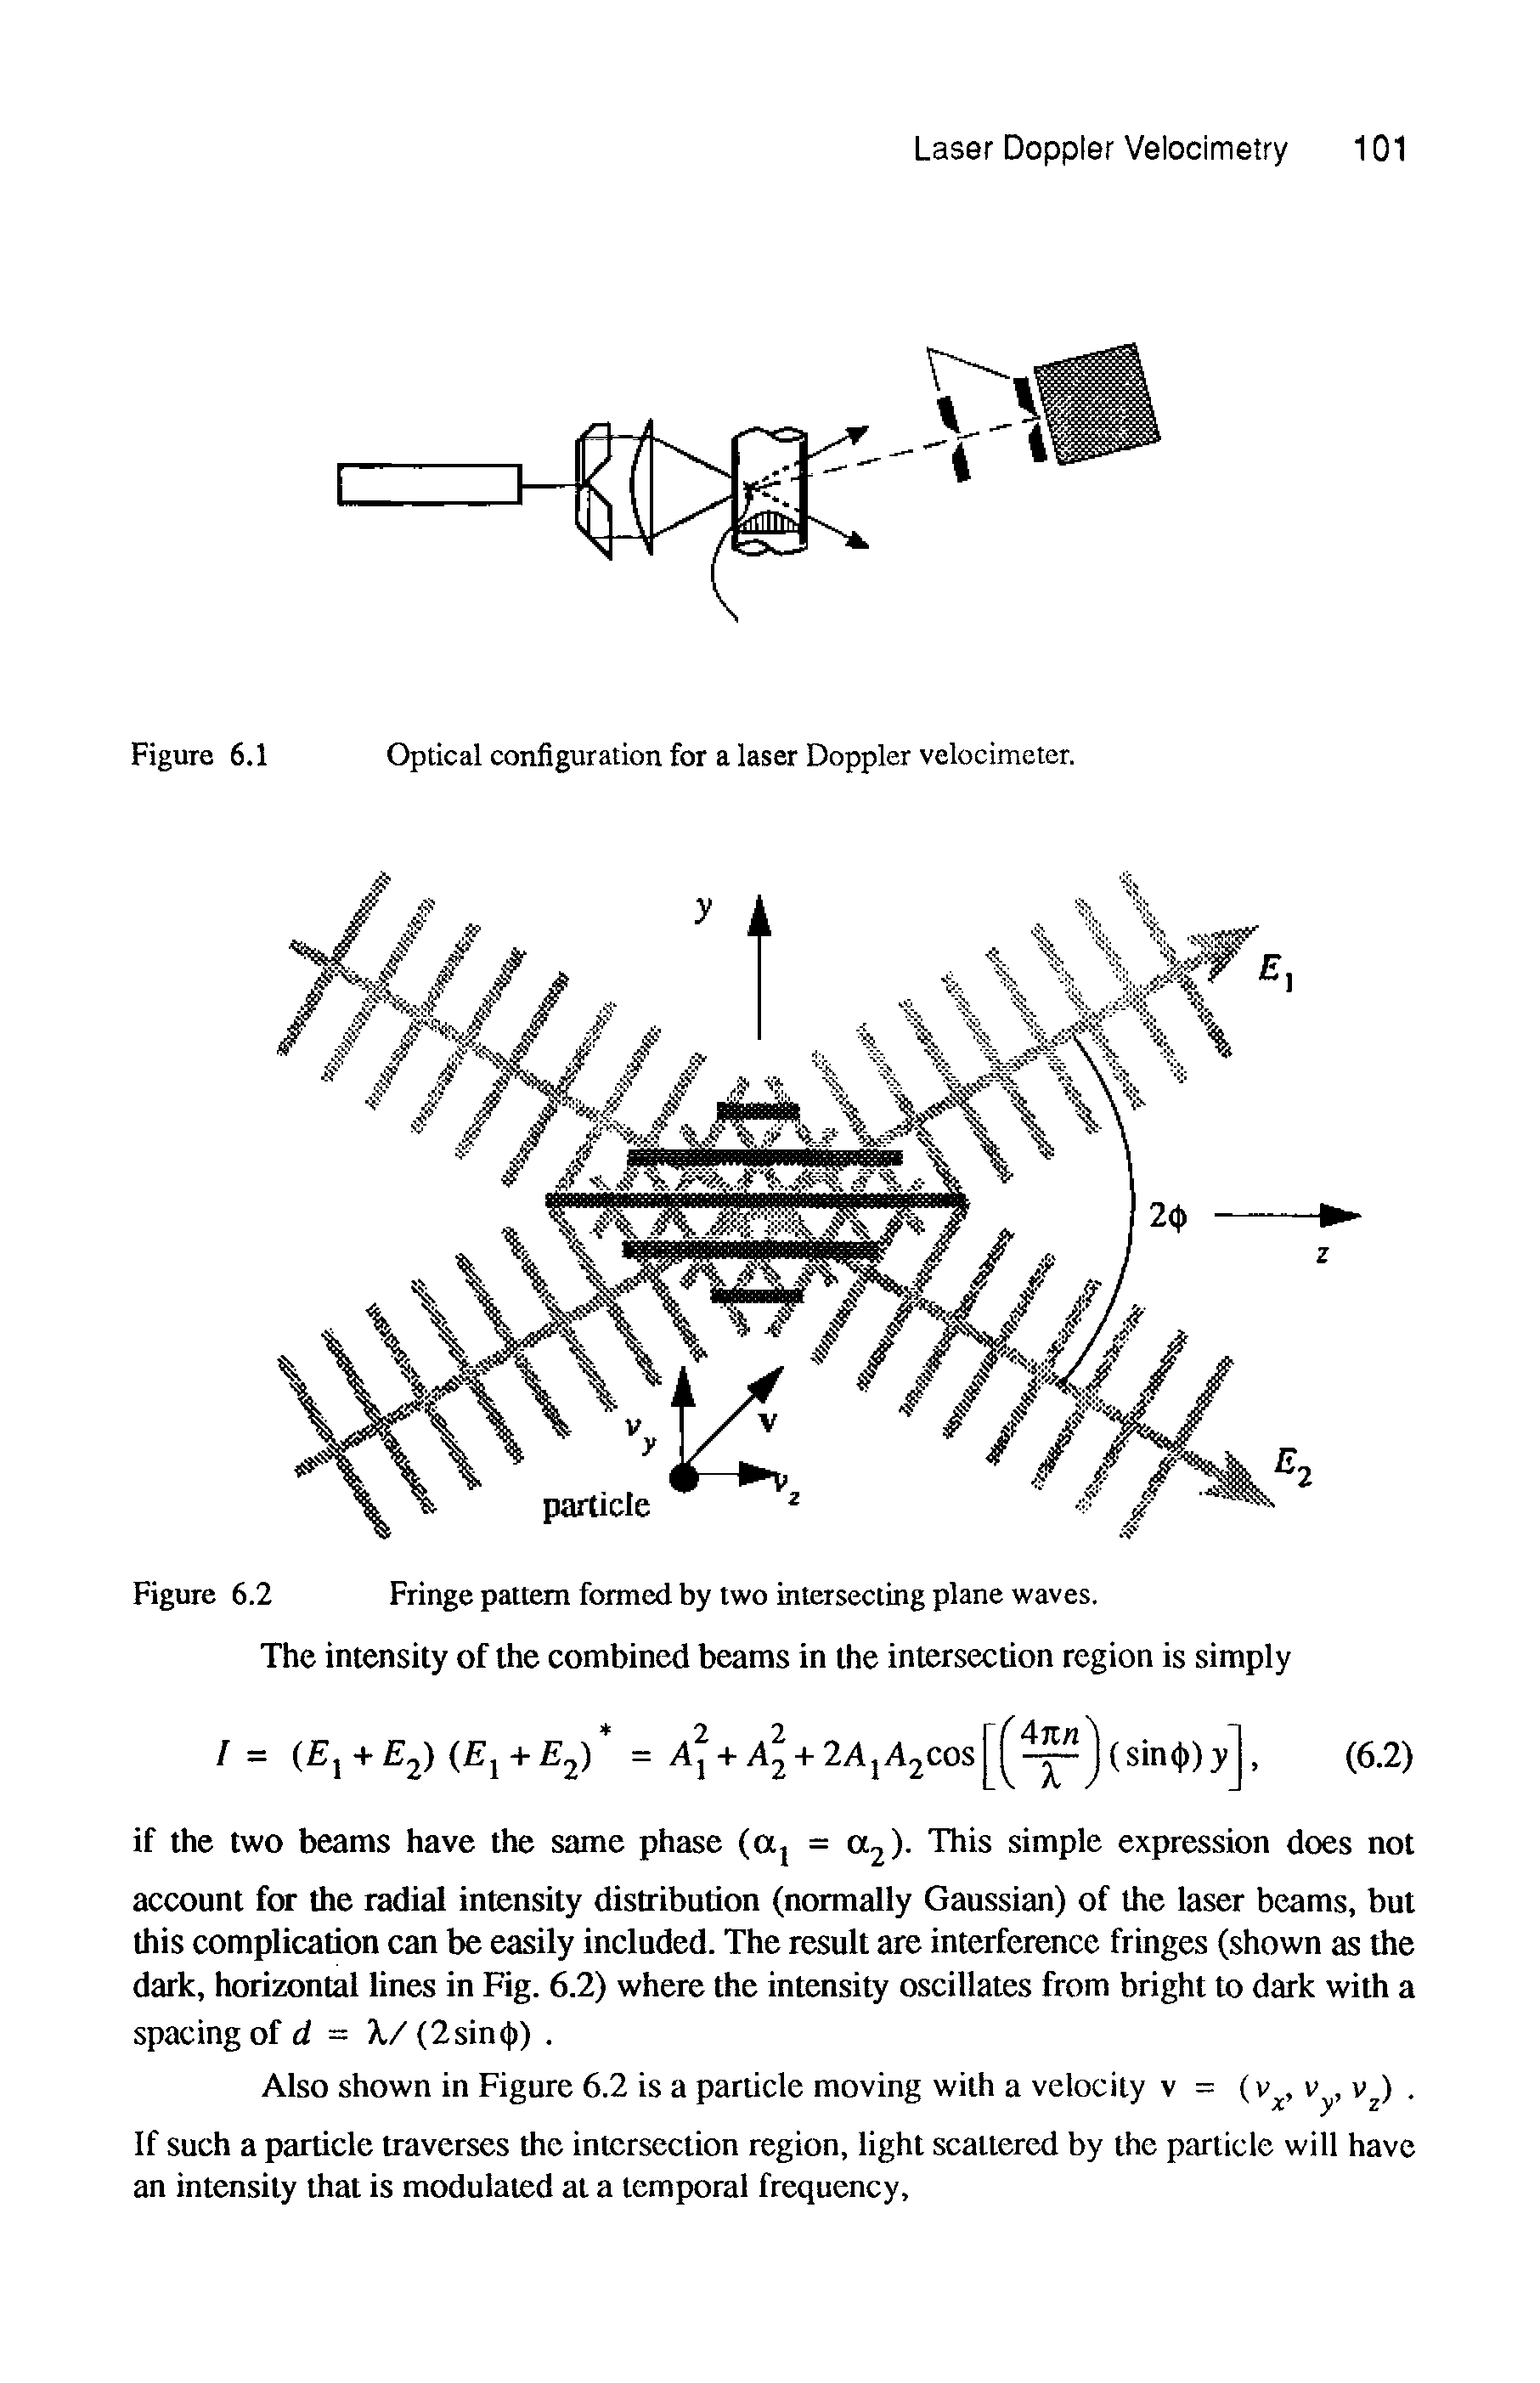 Figure 6.1 Optical configuration for a laser Doppler velocimeter.